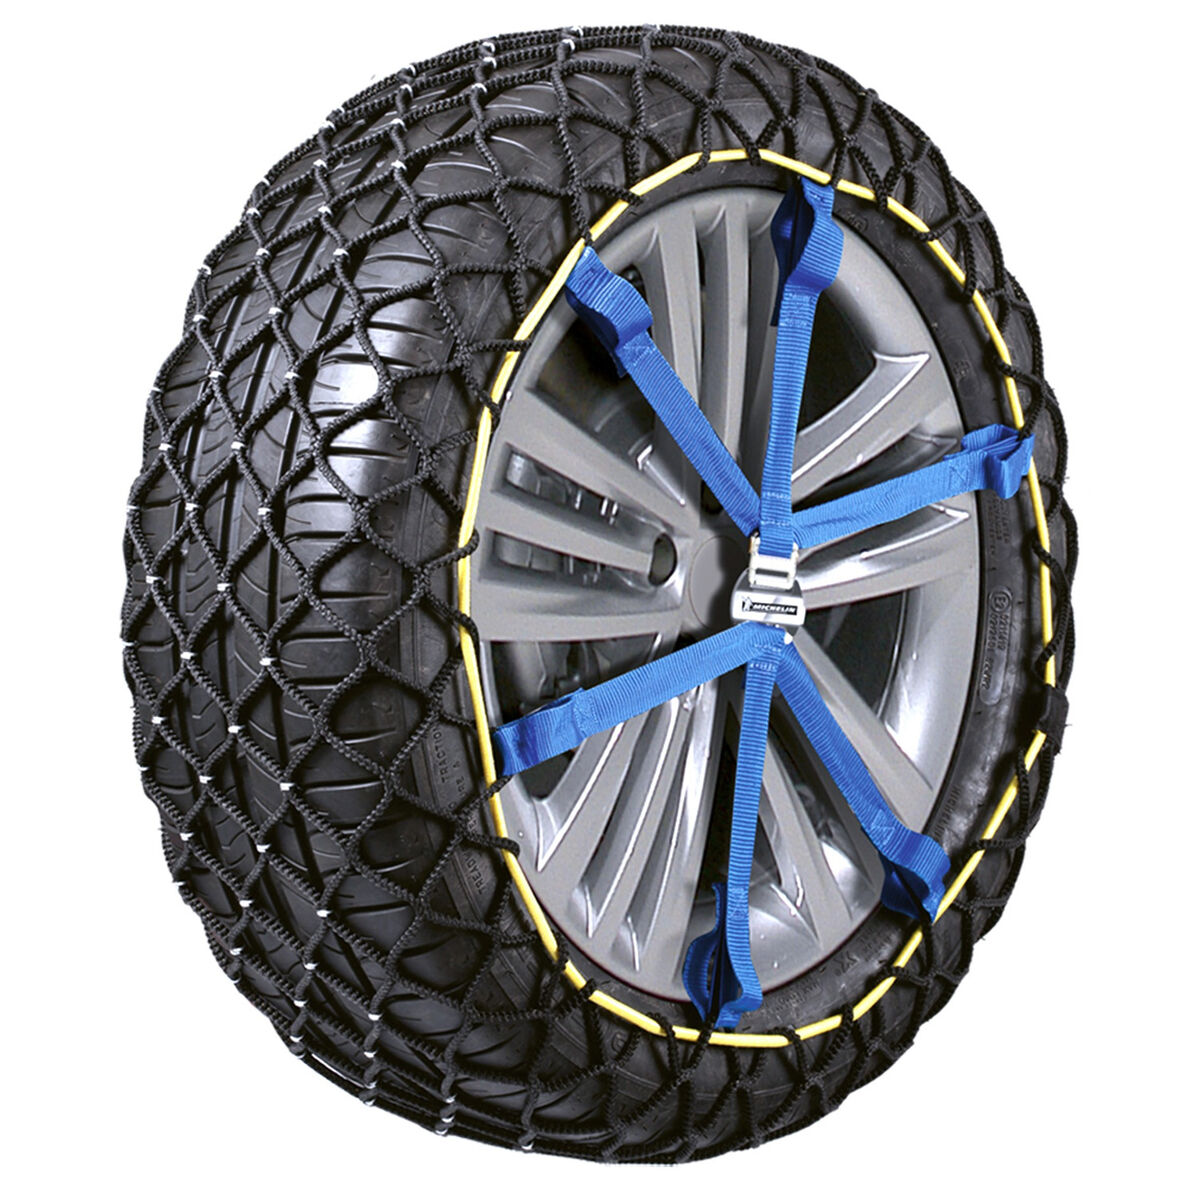 Osta tuote Auton liumiketjut Michelin Easy Grip EVOLUTION 12 verkkokaupastamme Korhone: Urheilu & Vapaa-aika 10% alennuksella koodilla KORHONE